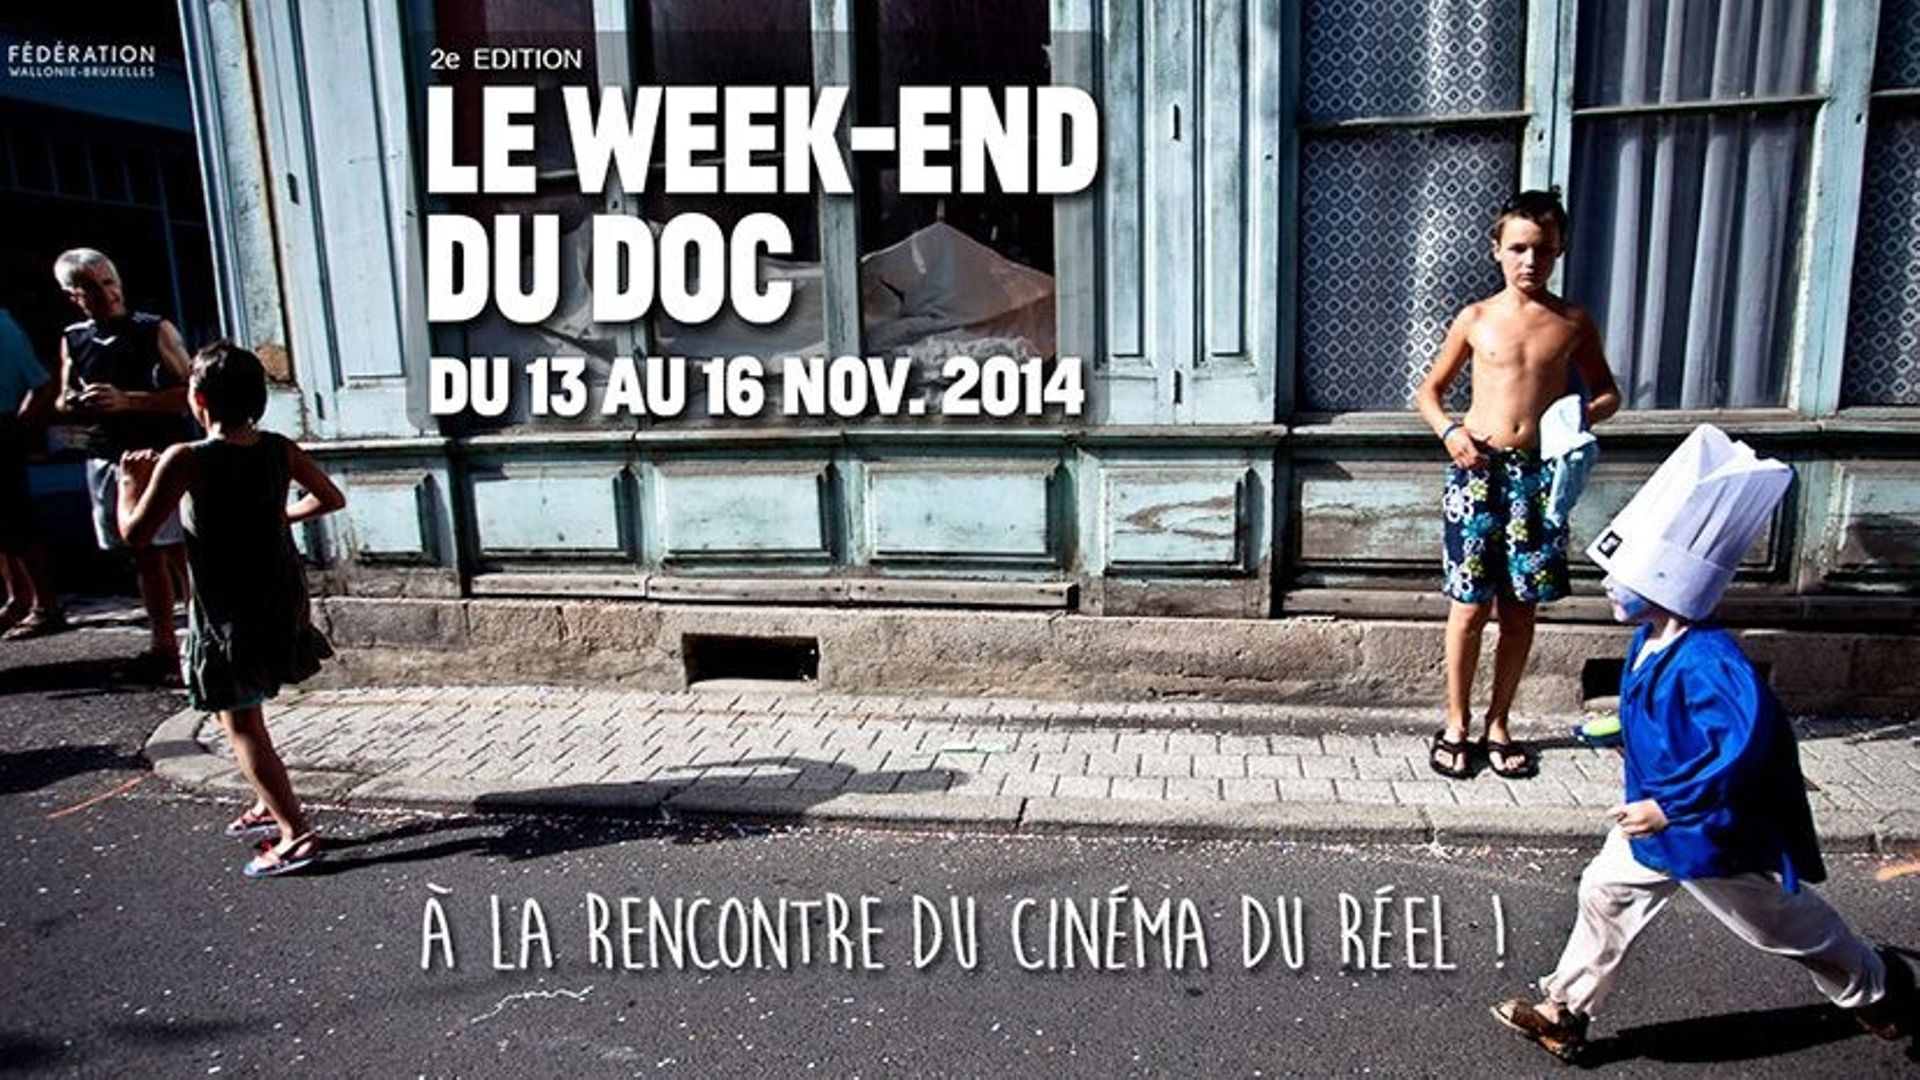 le-week-end-du-doc-invite-a-la-rencontre-du-cinema-du-reel-du-13-au-16-novembre